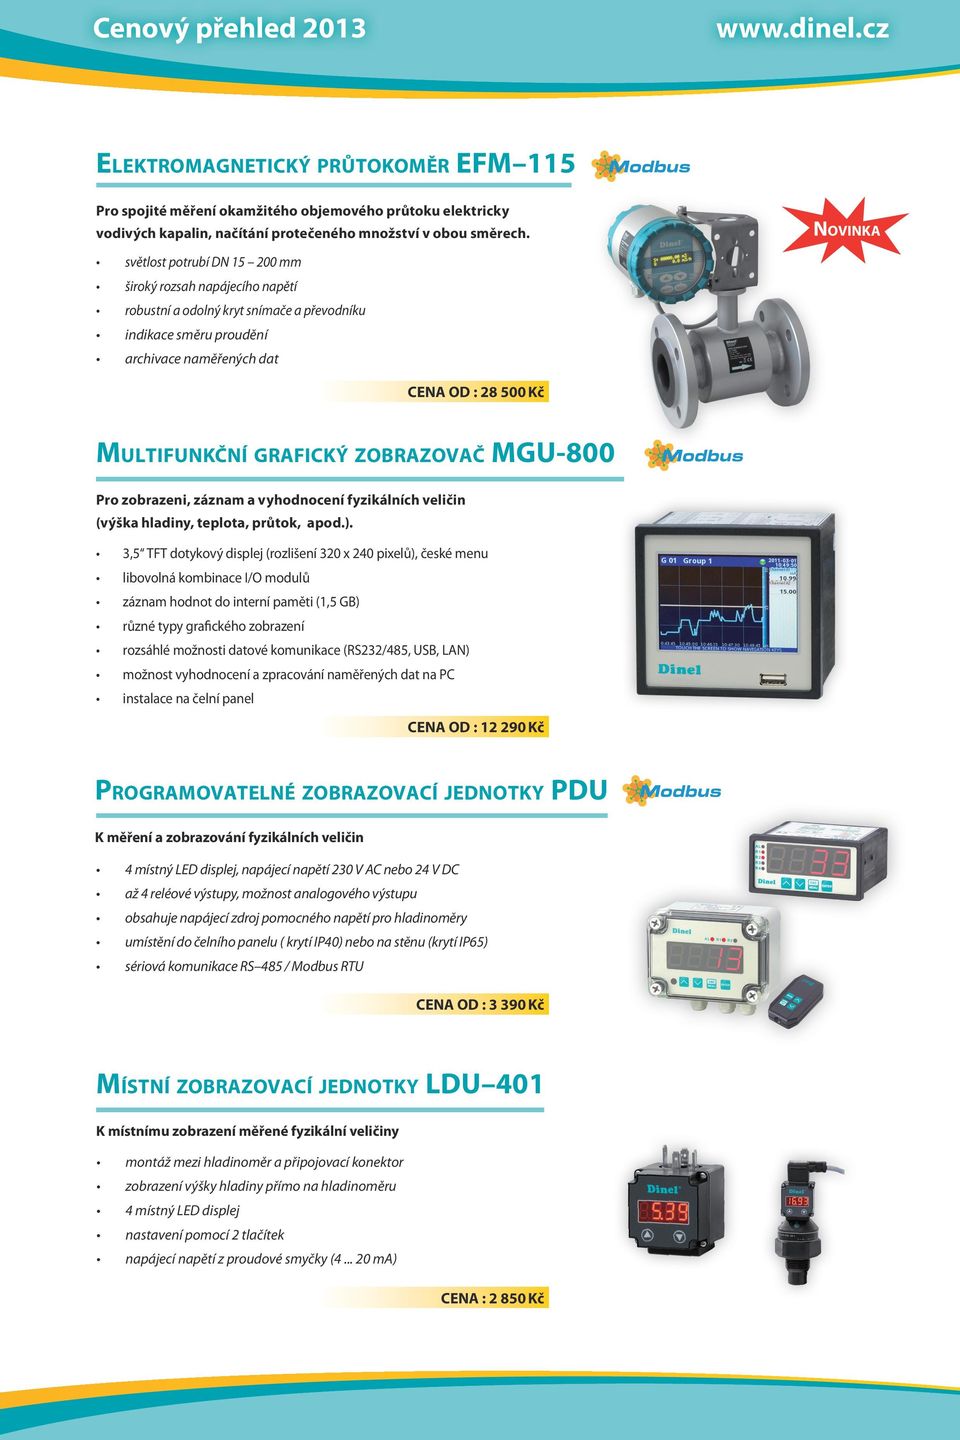 Multifunkční grafický zobrazovač MGU-800 Pro zobrazeni, záznam a vyhodnocení fyzikálních veličin (výška hladiny, teplota, průtok, apod.).